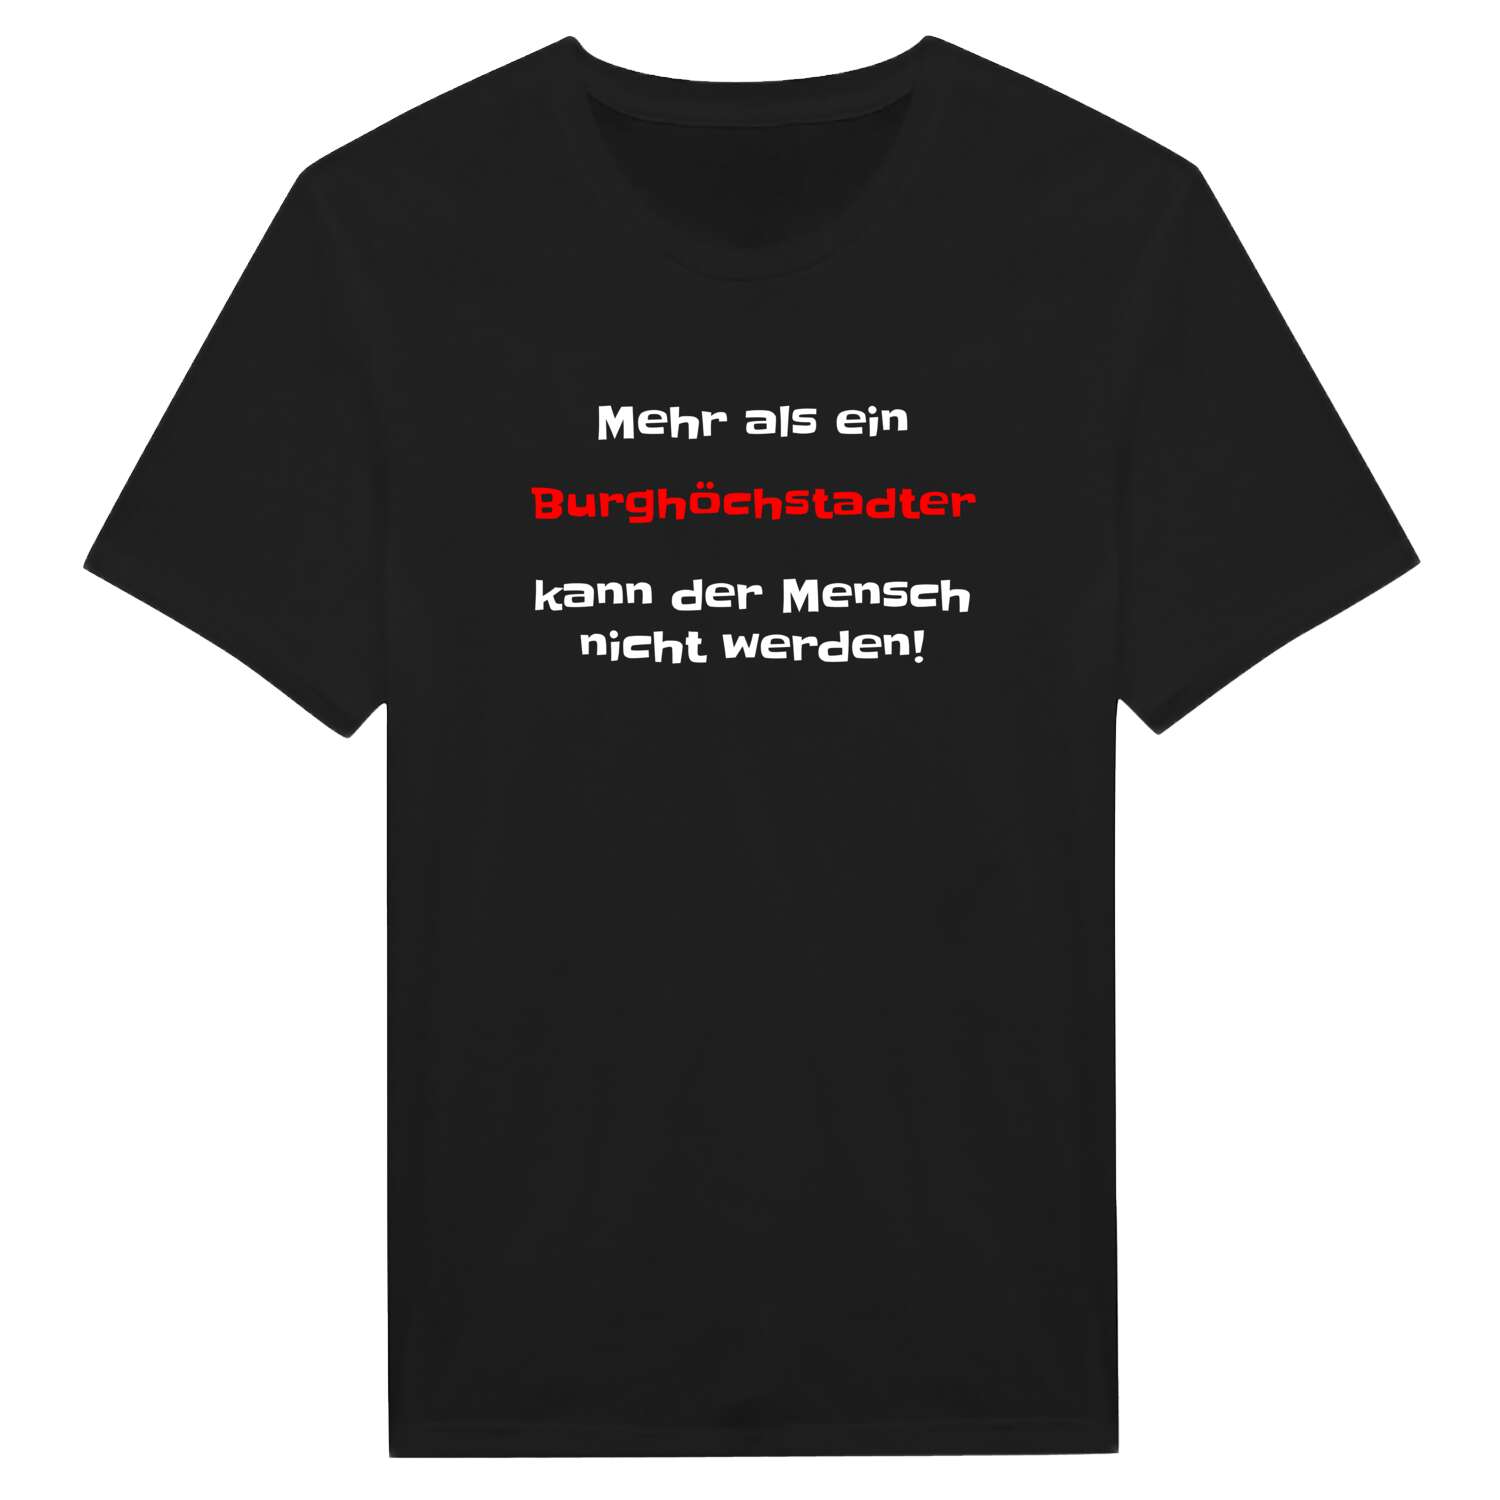 Burghöchstadt T-Shirt »Mehr als ein«